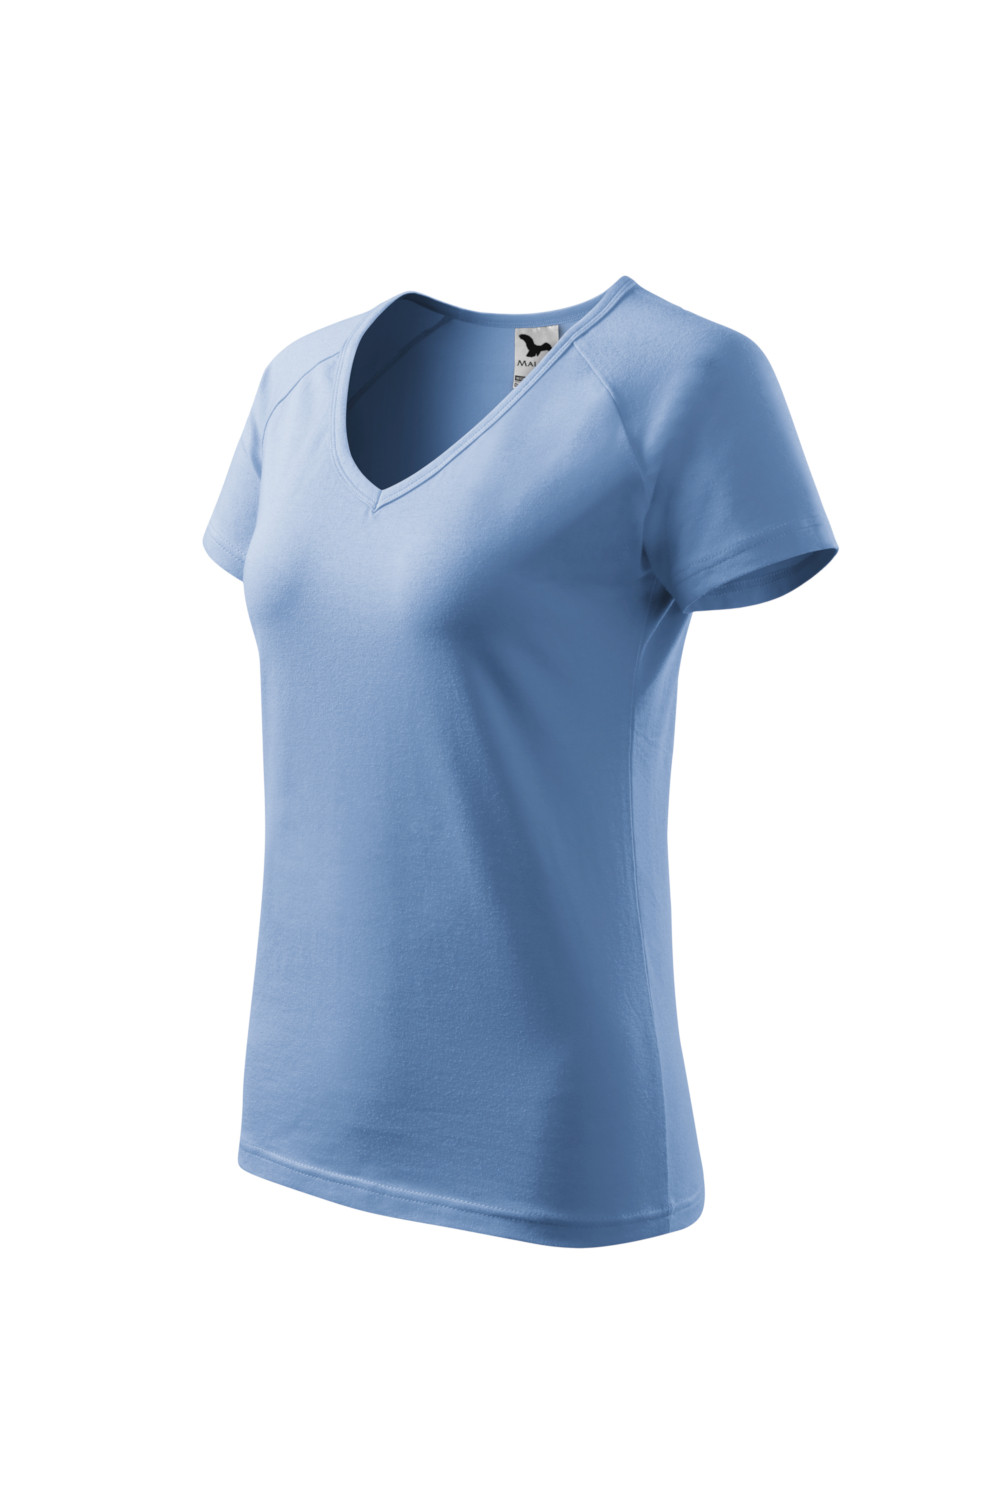 Koszulka damska 95% bawełna 5% elastan DREAM 128 odzież błękit